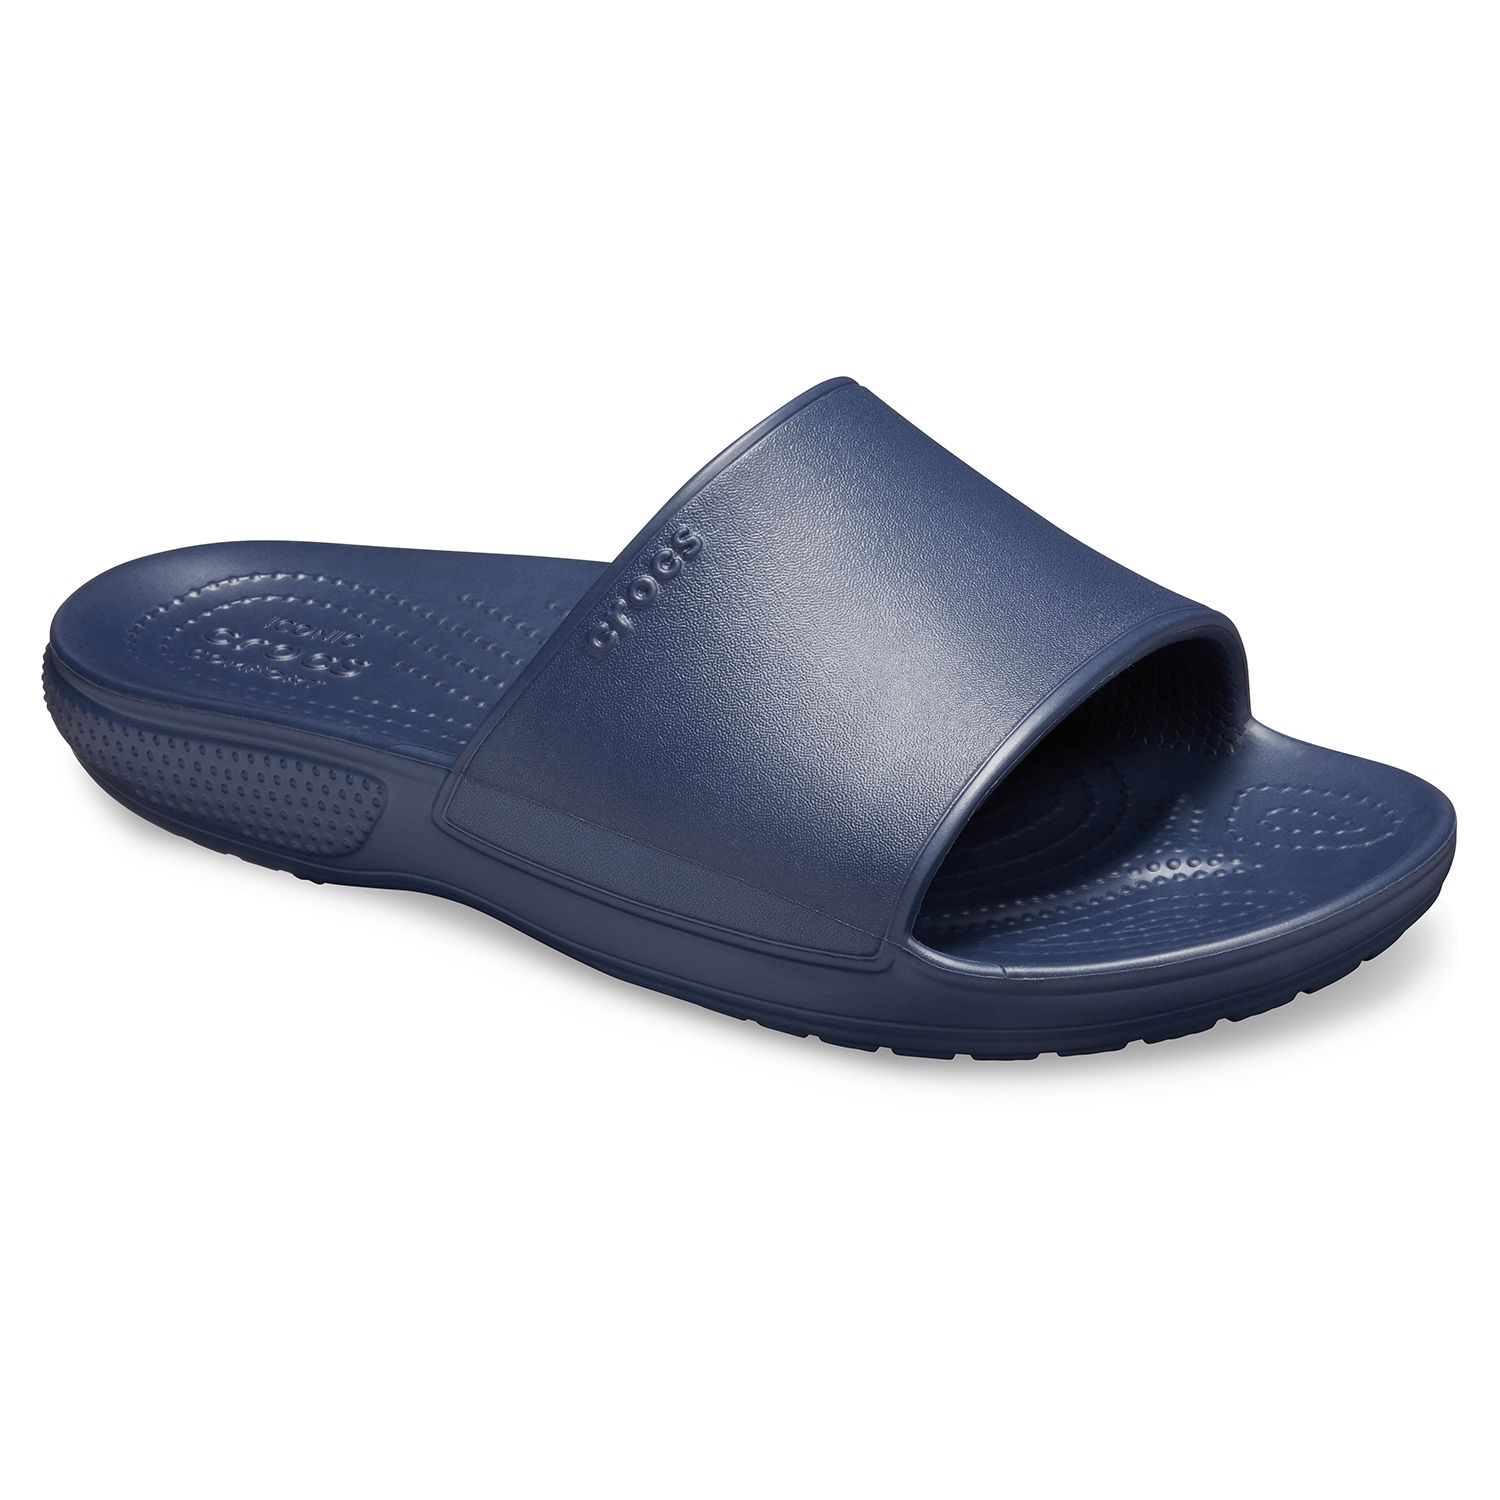 crocs classic men's flip flop sandals